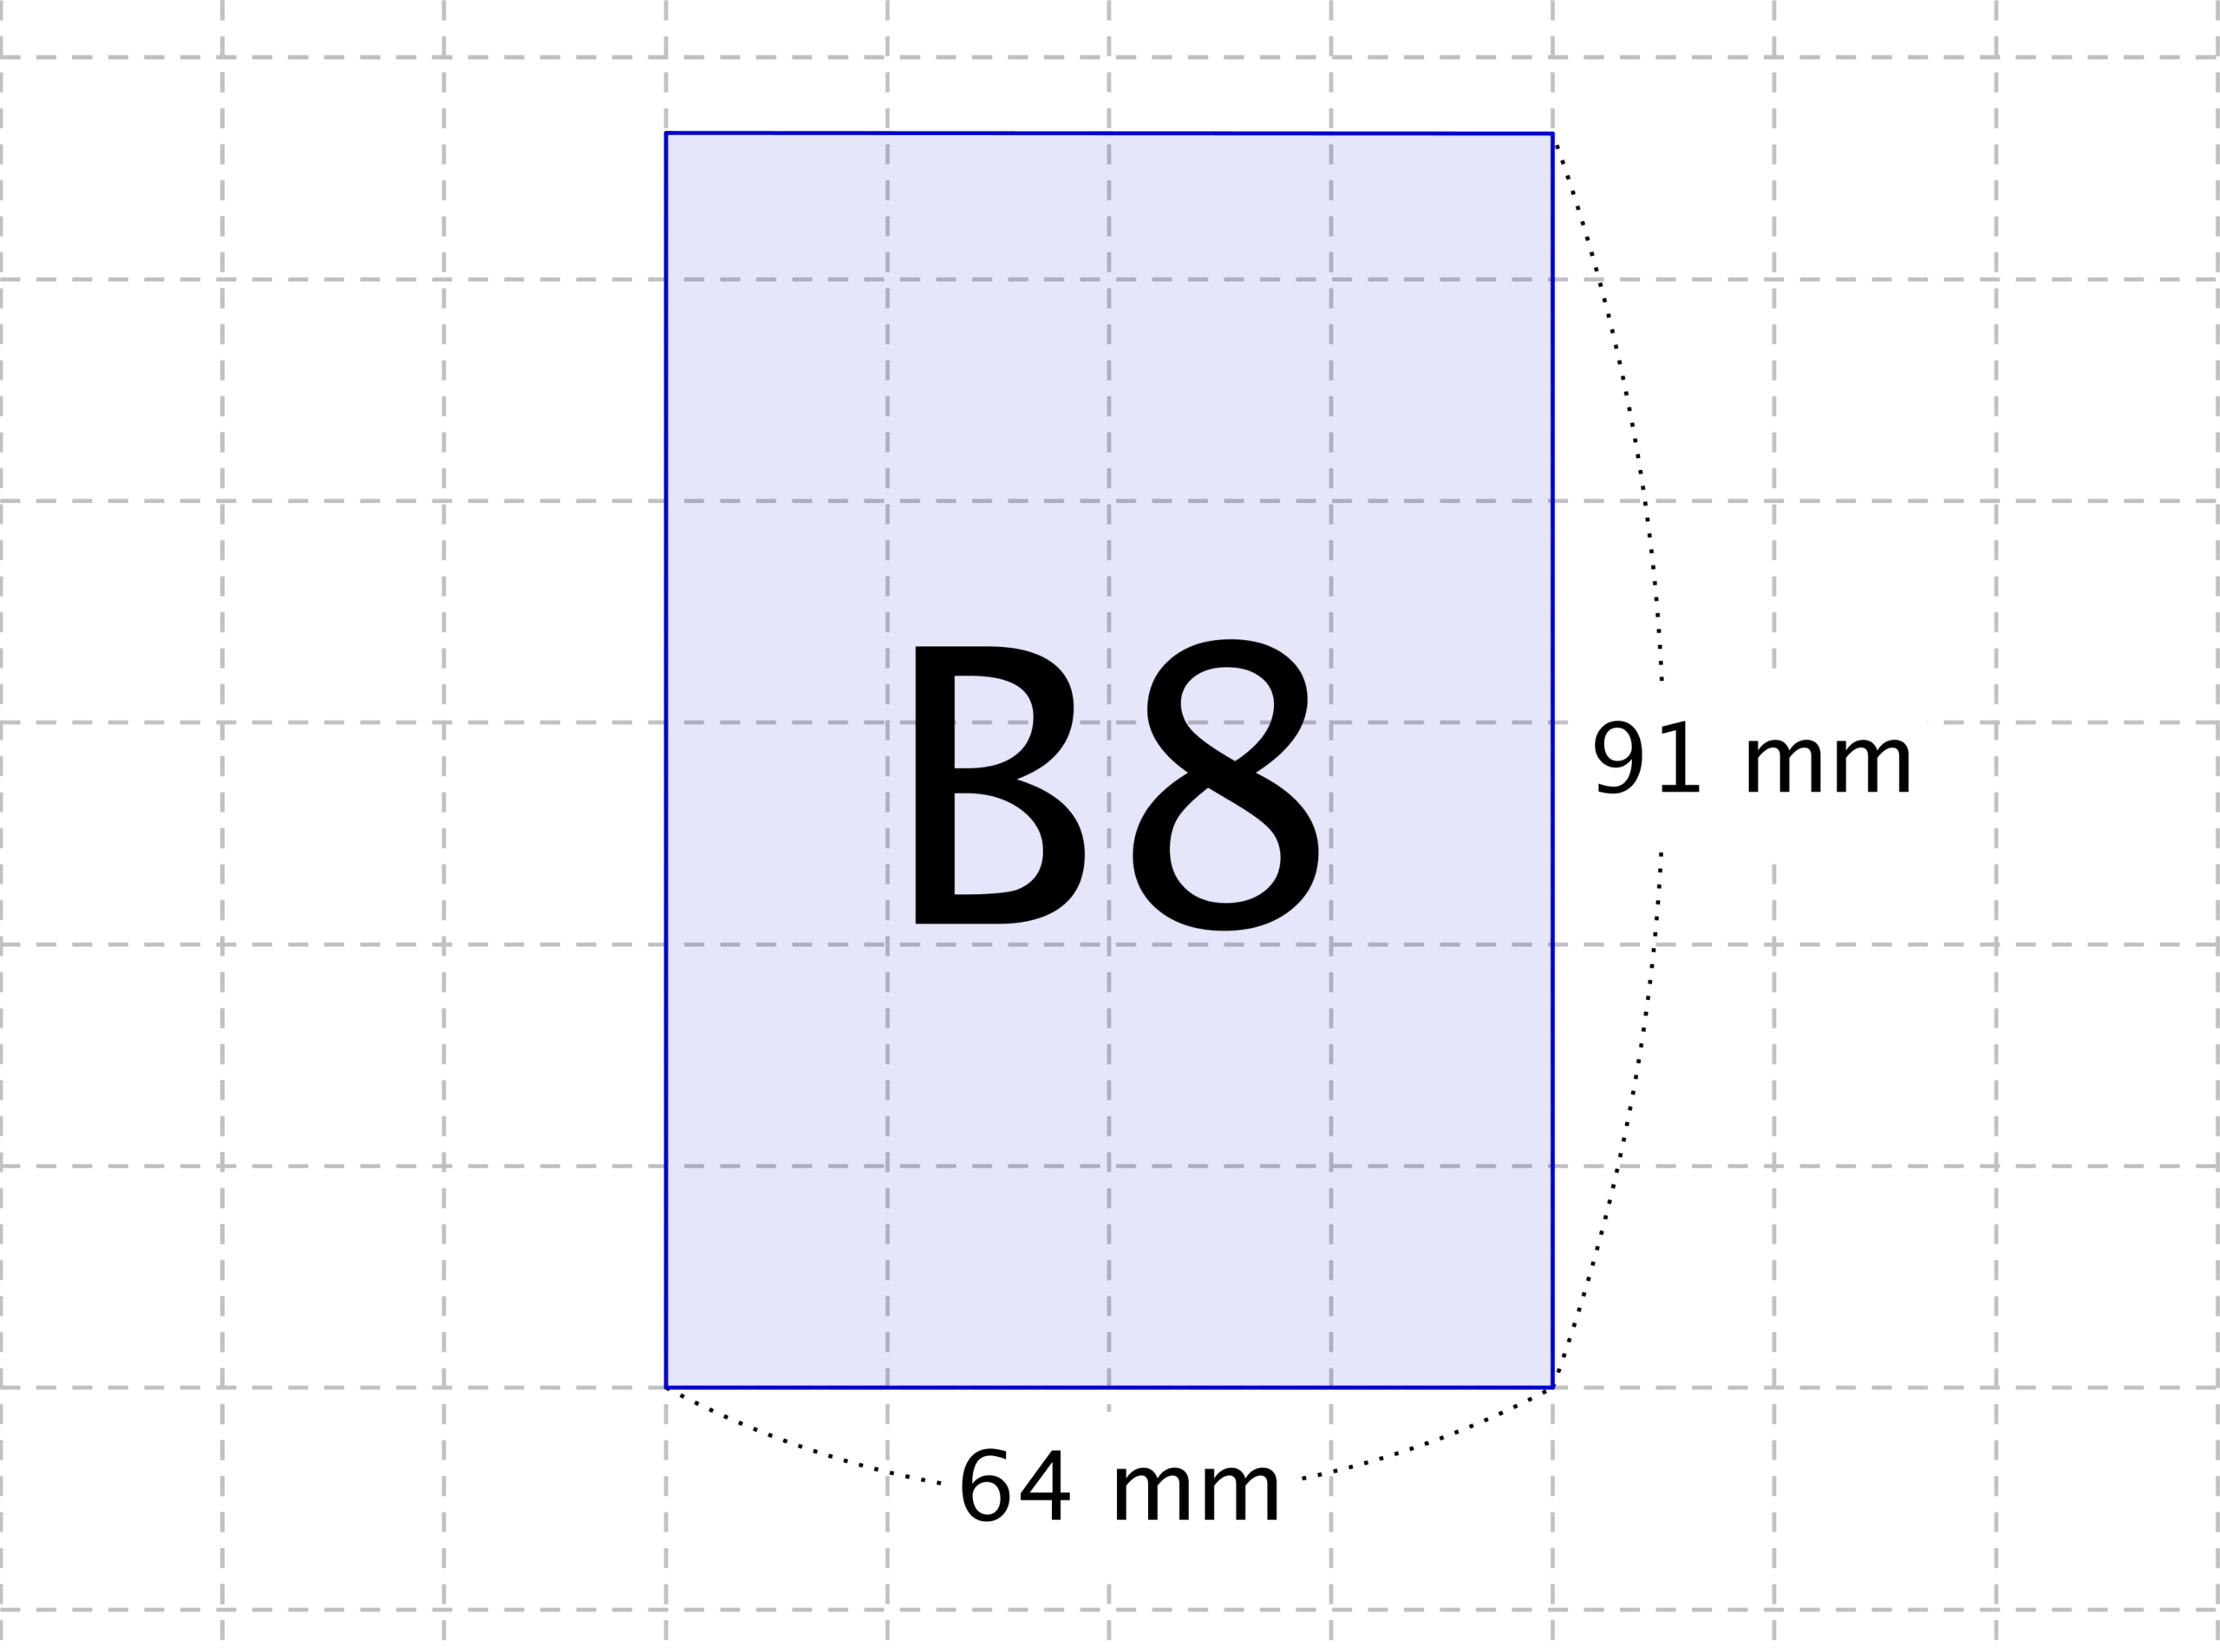 B8 サイズの大きさ Jis P 0138 用紙のサイズ一覧